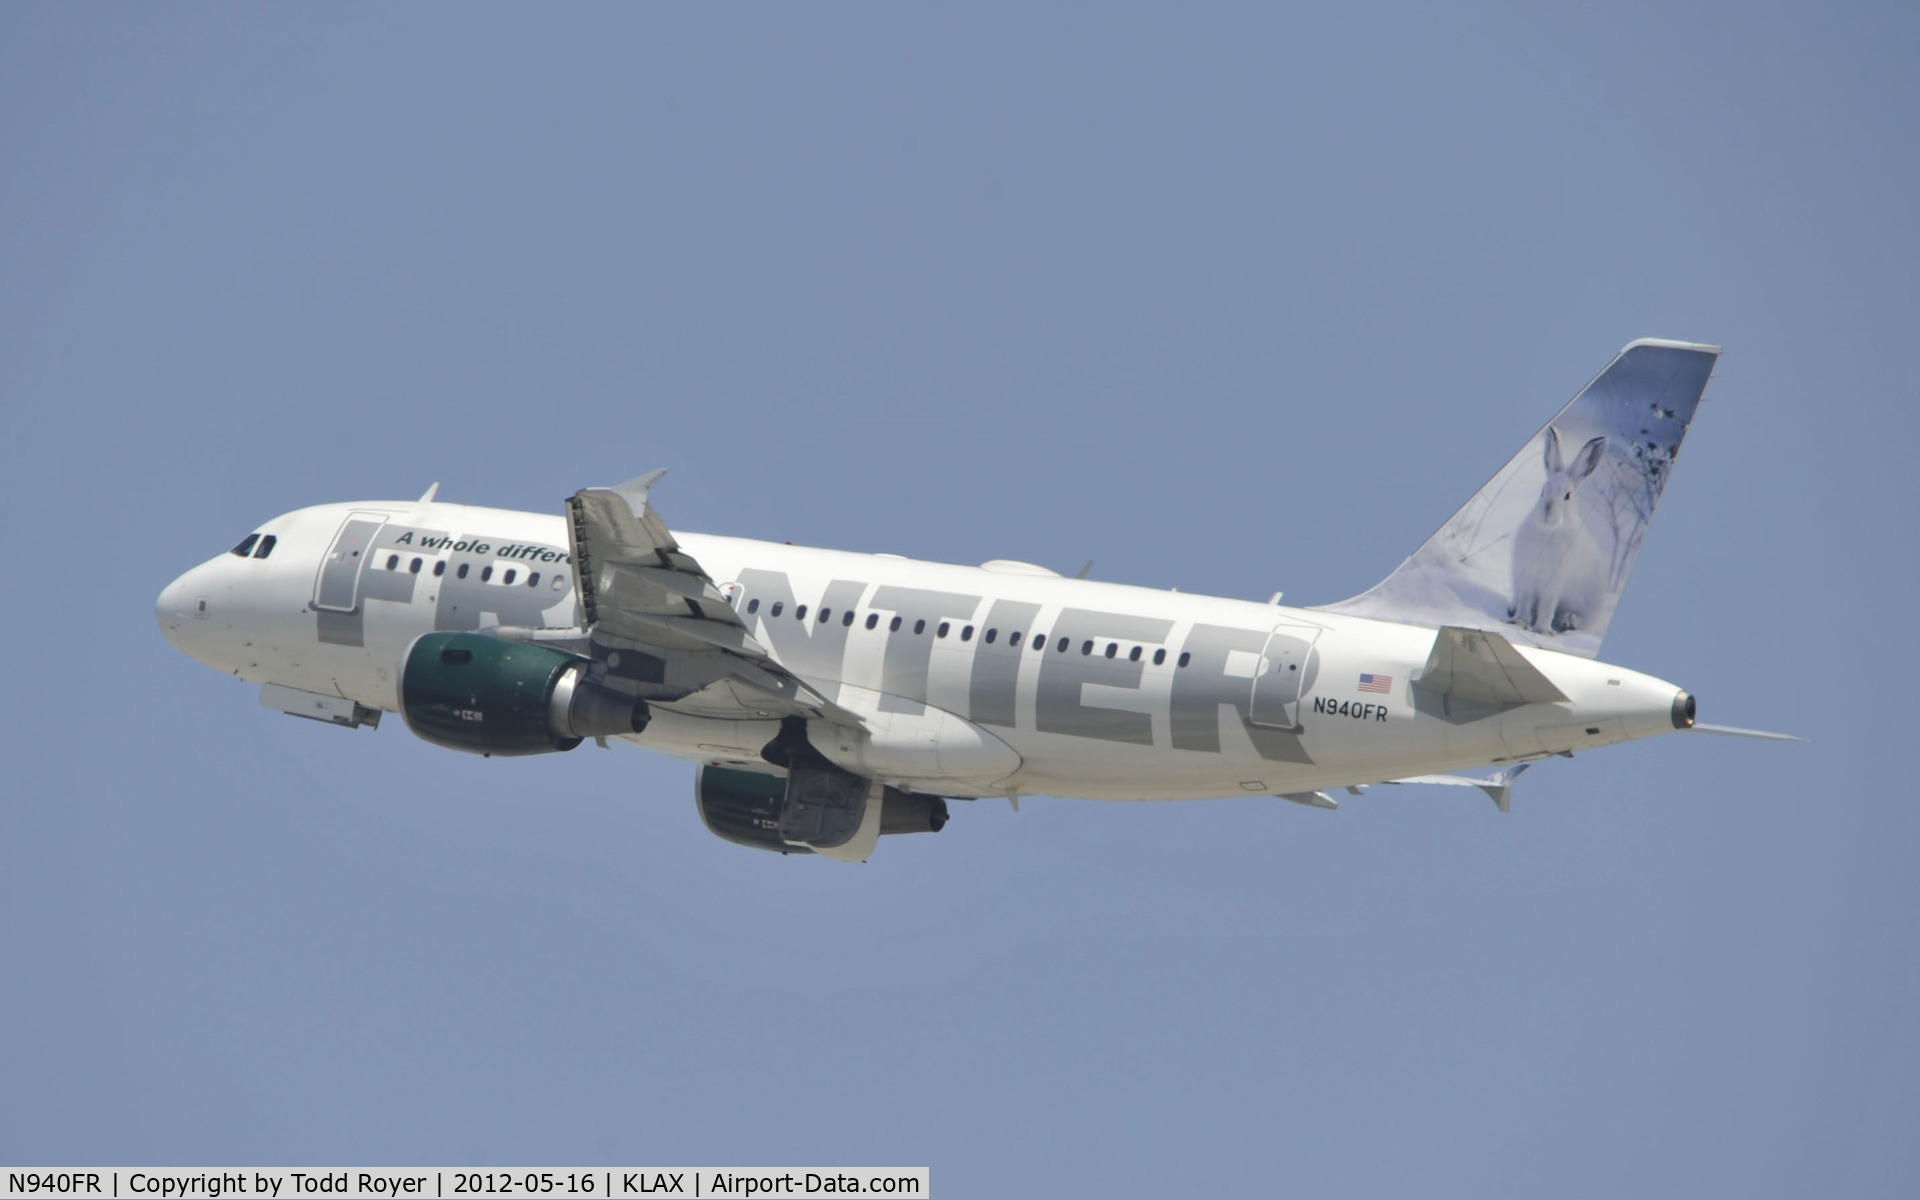 N940FR, 2005 Airbus A319-111 C/N 2465, Departing LAX on 25R